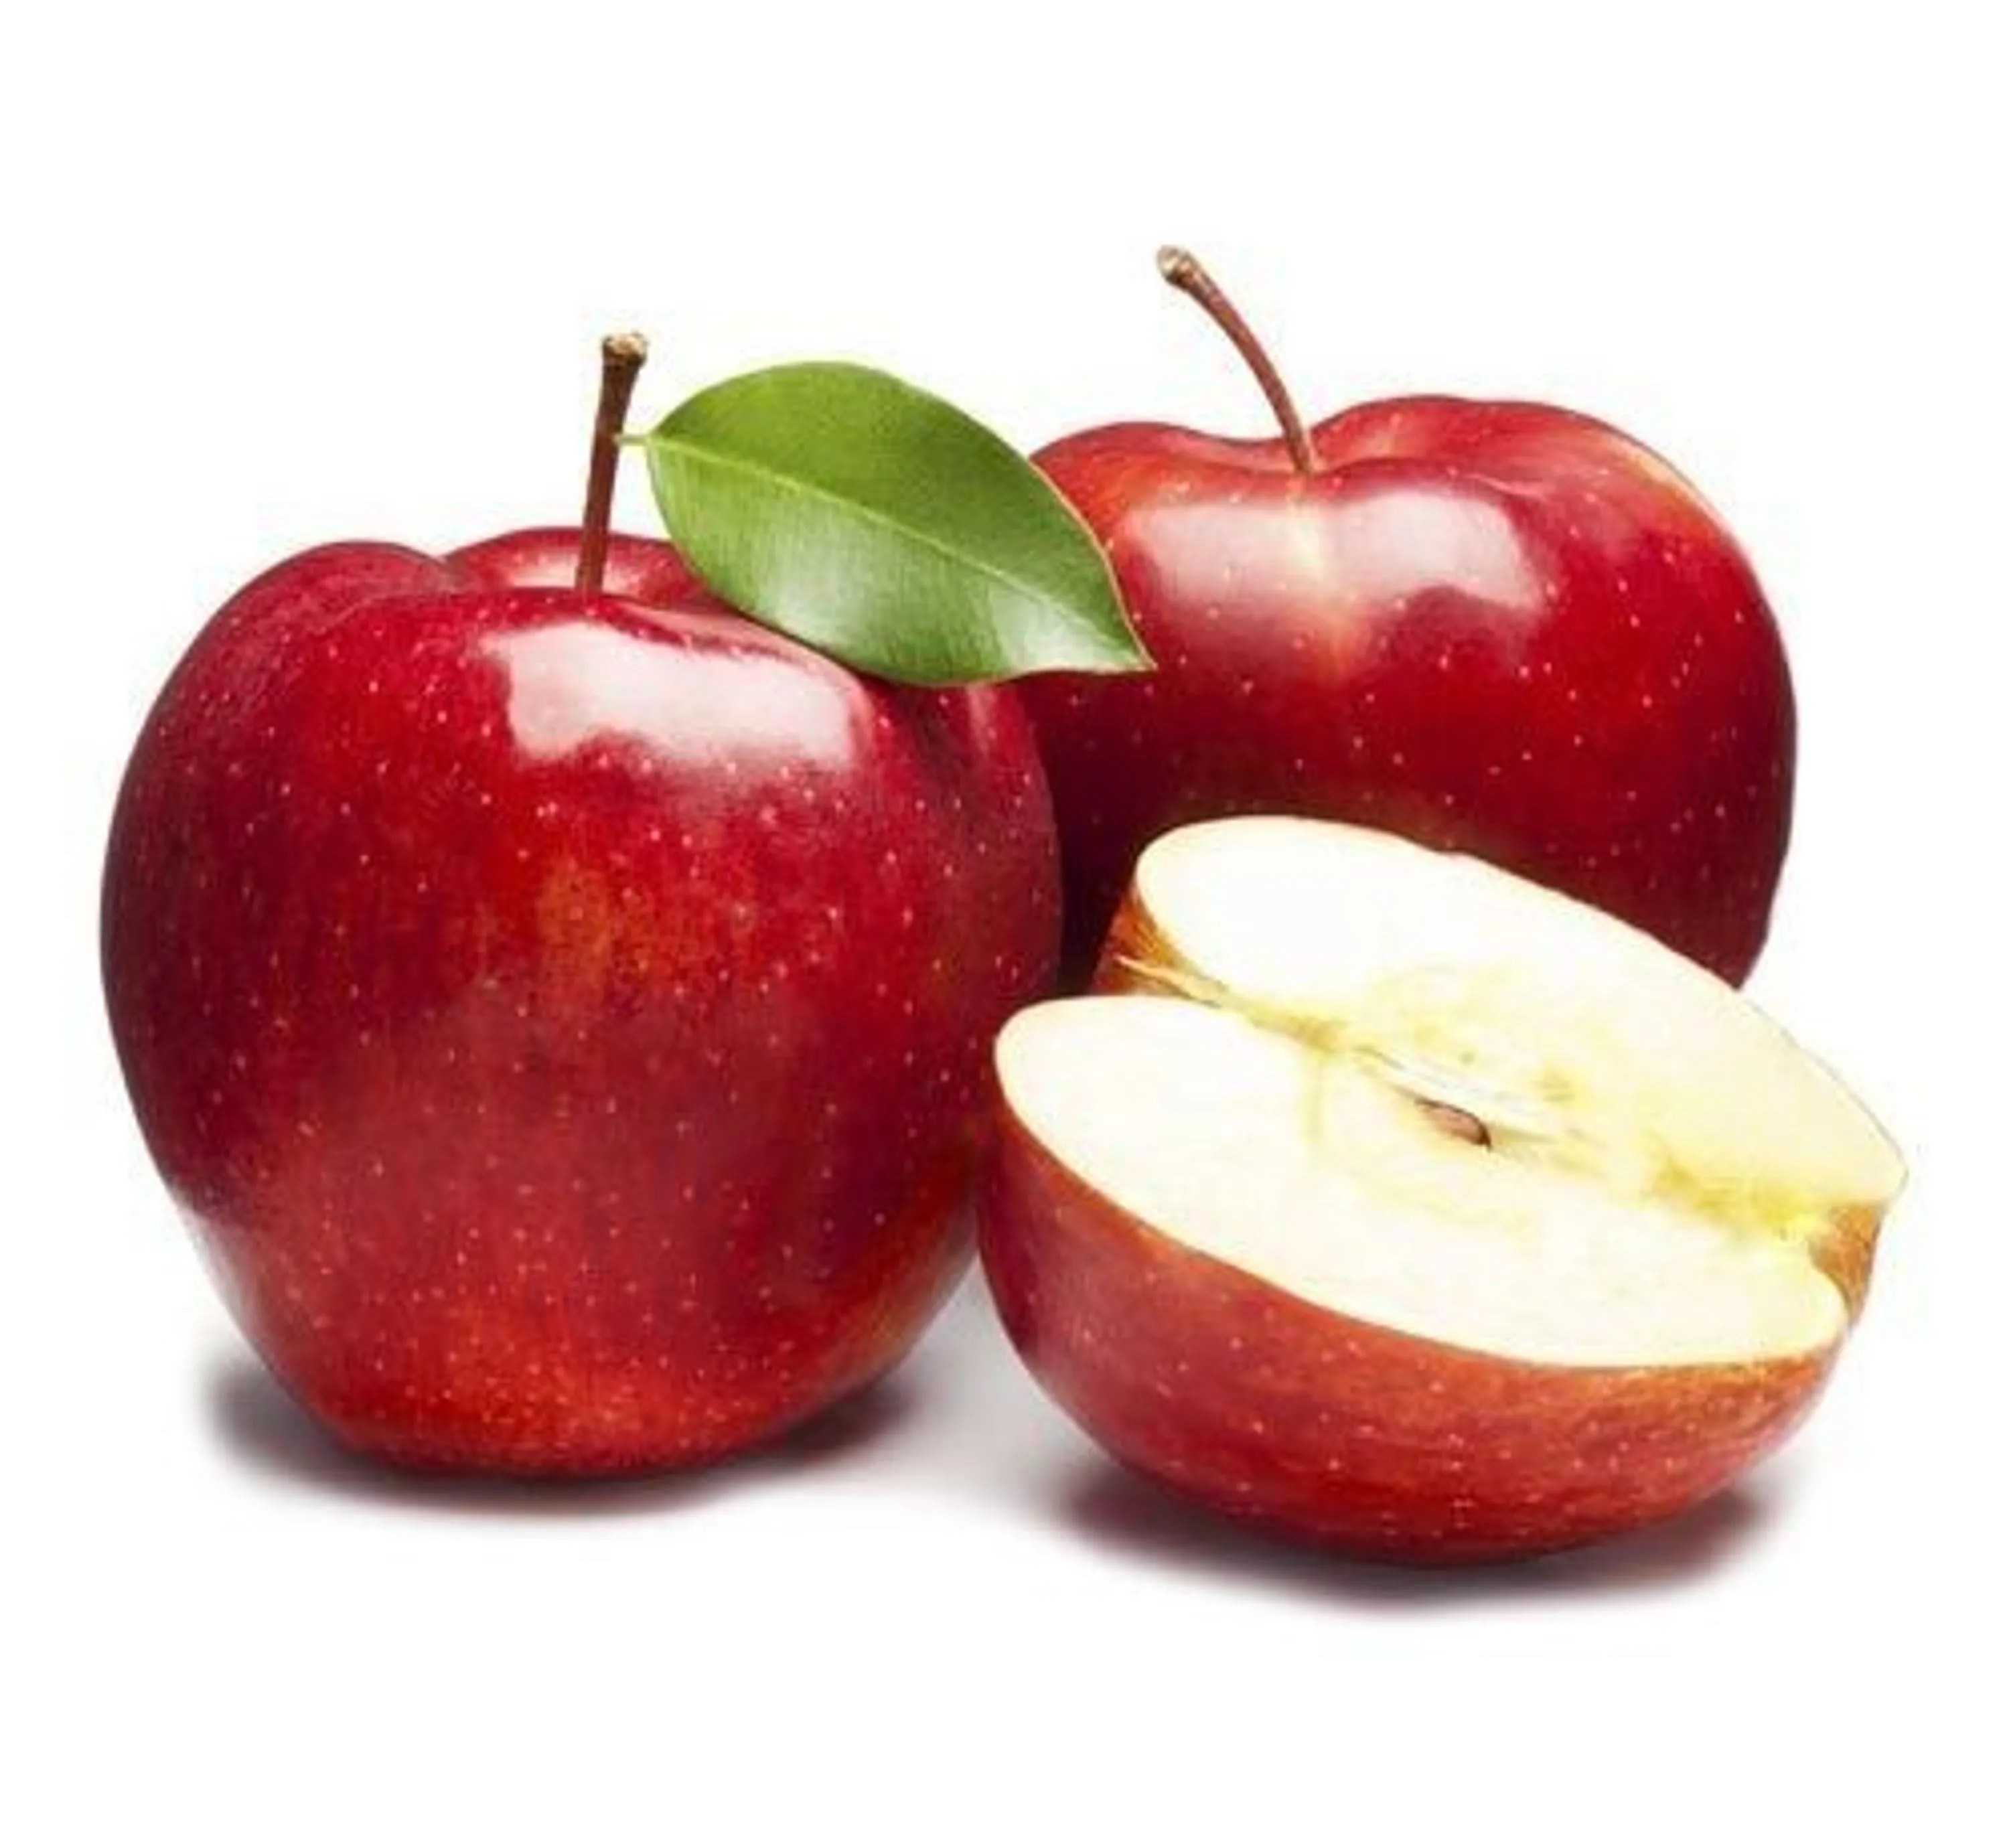 احسن سعر شراء التفاح في ايران 